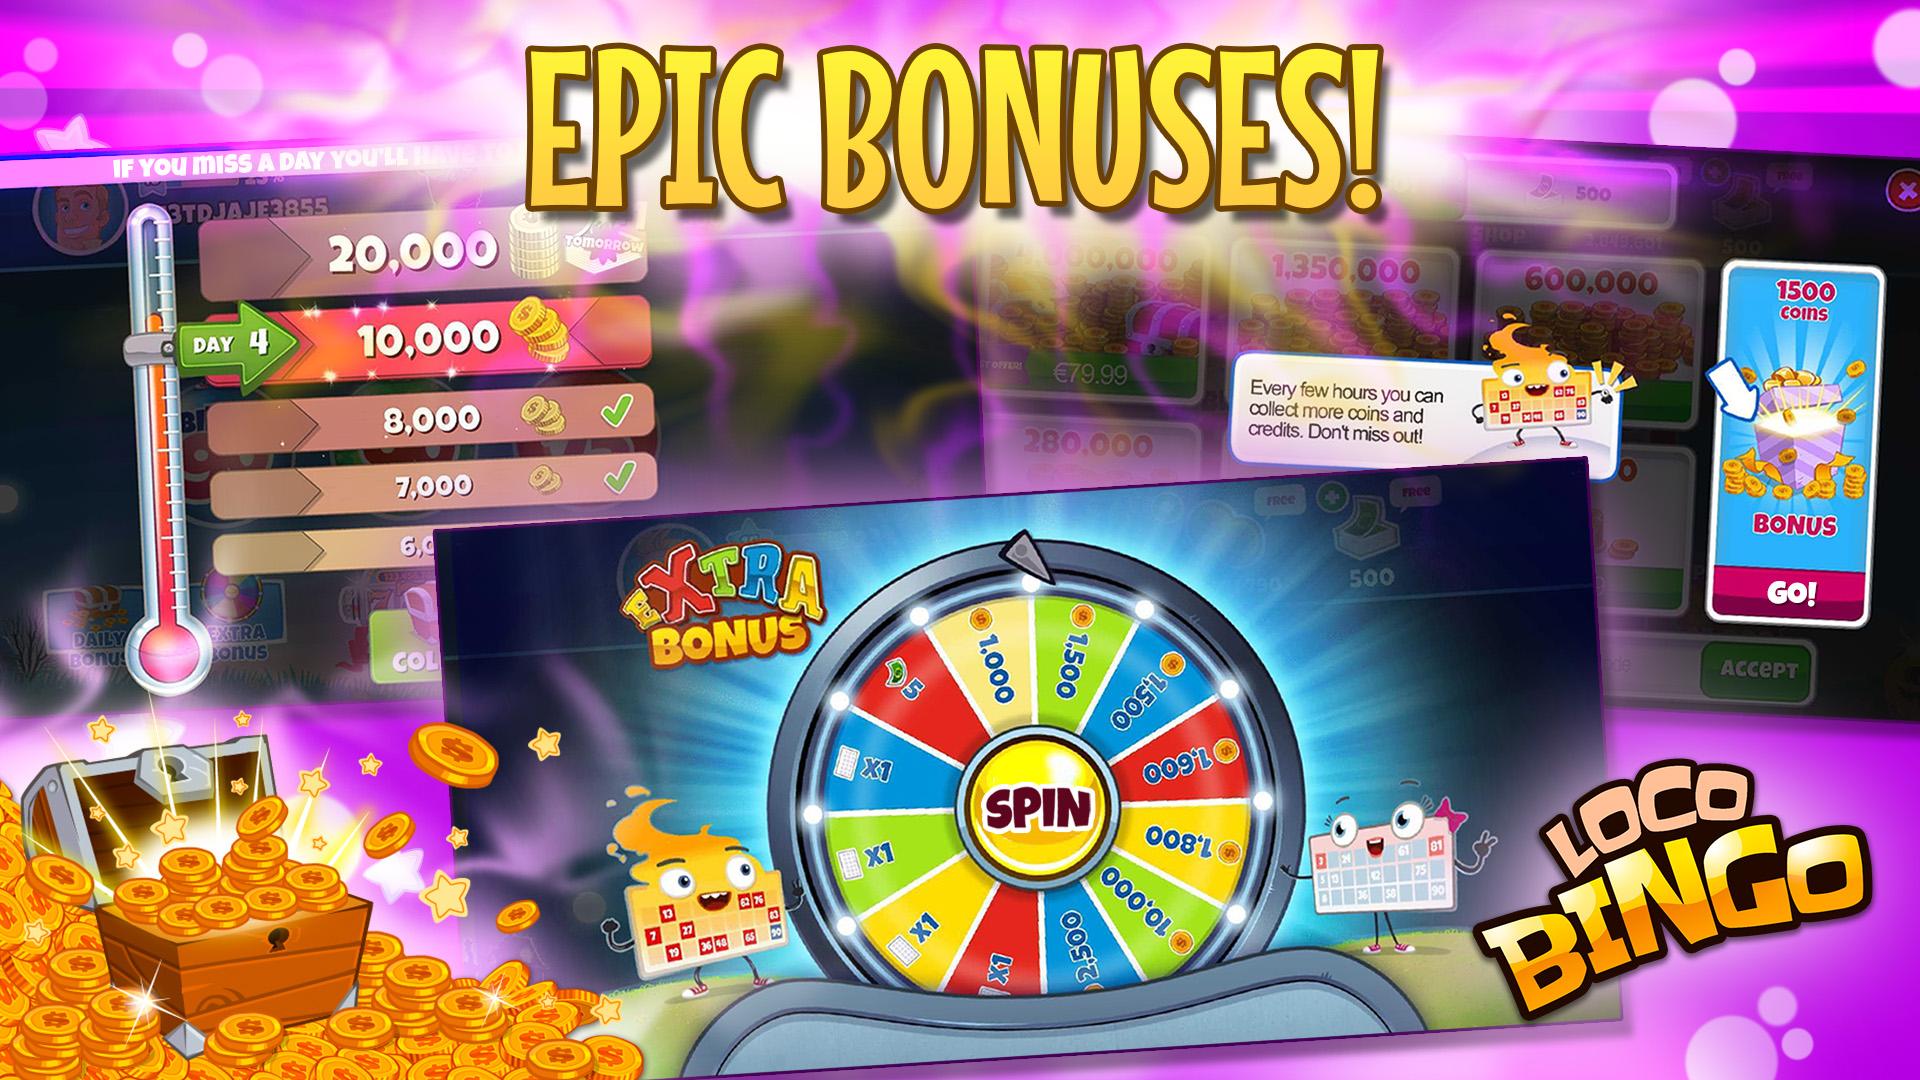 Loco bingo. Casino games slots 2021.6.0 Screenshot 16